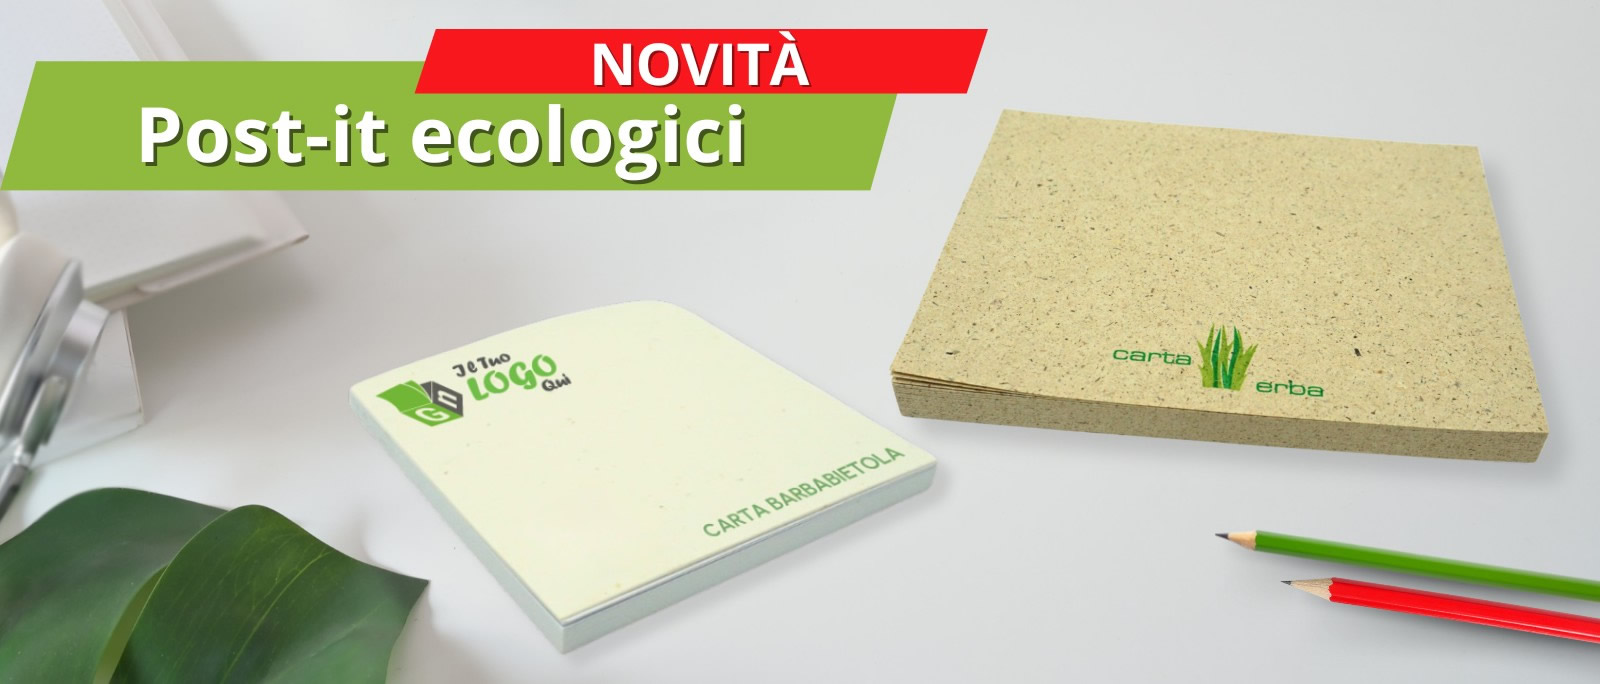 Post it edcologici in Carta erba e Carta barbabietola per una comunicazione eco-friendly